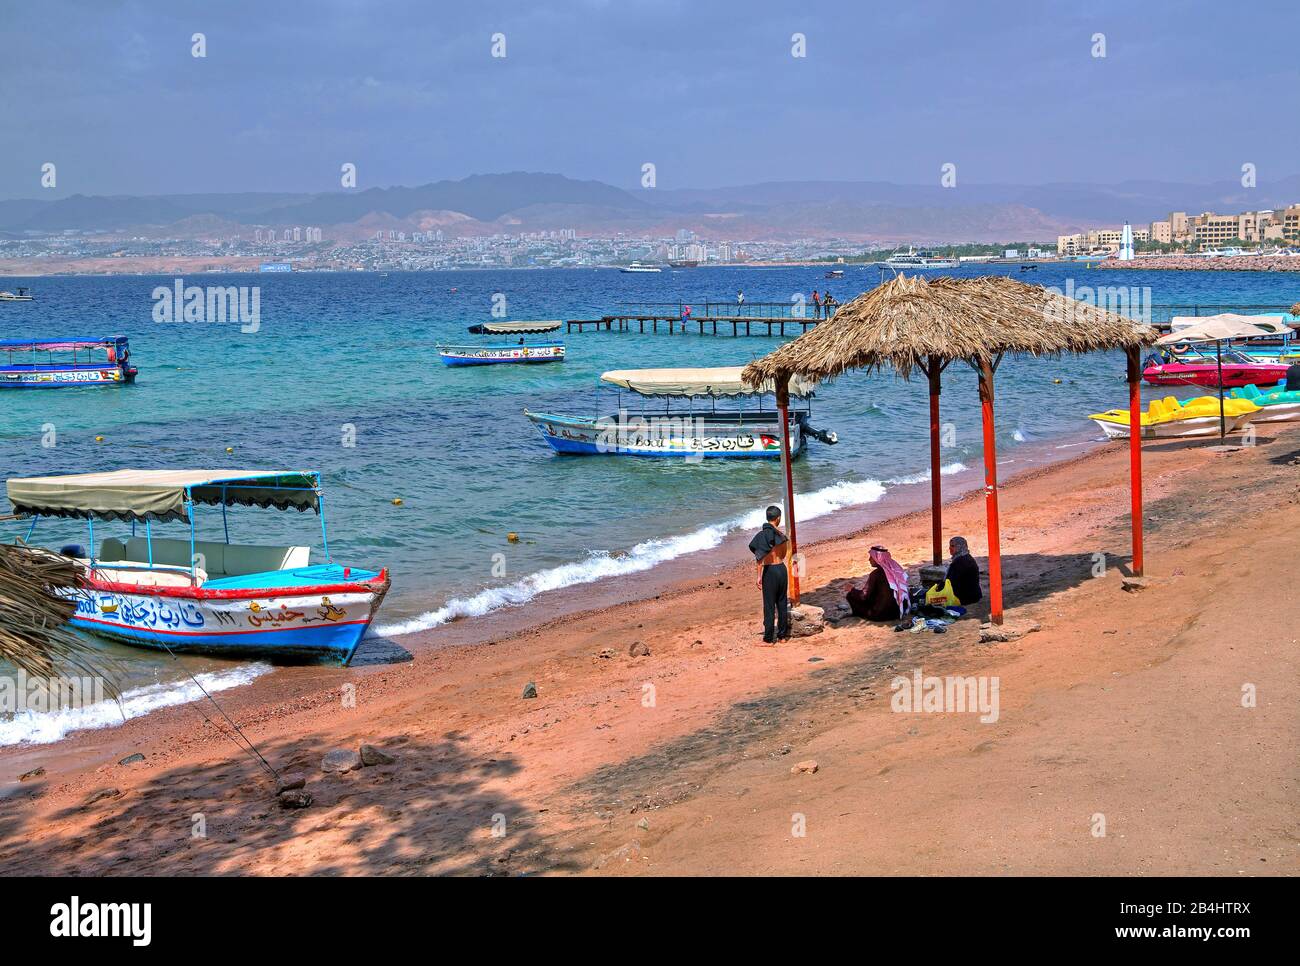 Les habitants de la plage de la ville avec bateaux d'excursion et vue sur Eilat Aqaba Aqaba, le golfe d'Aqaba, la mer Rouge, Jordanie Banque D'Images